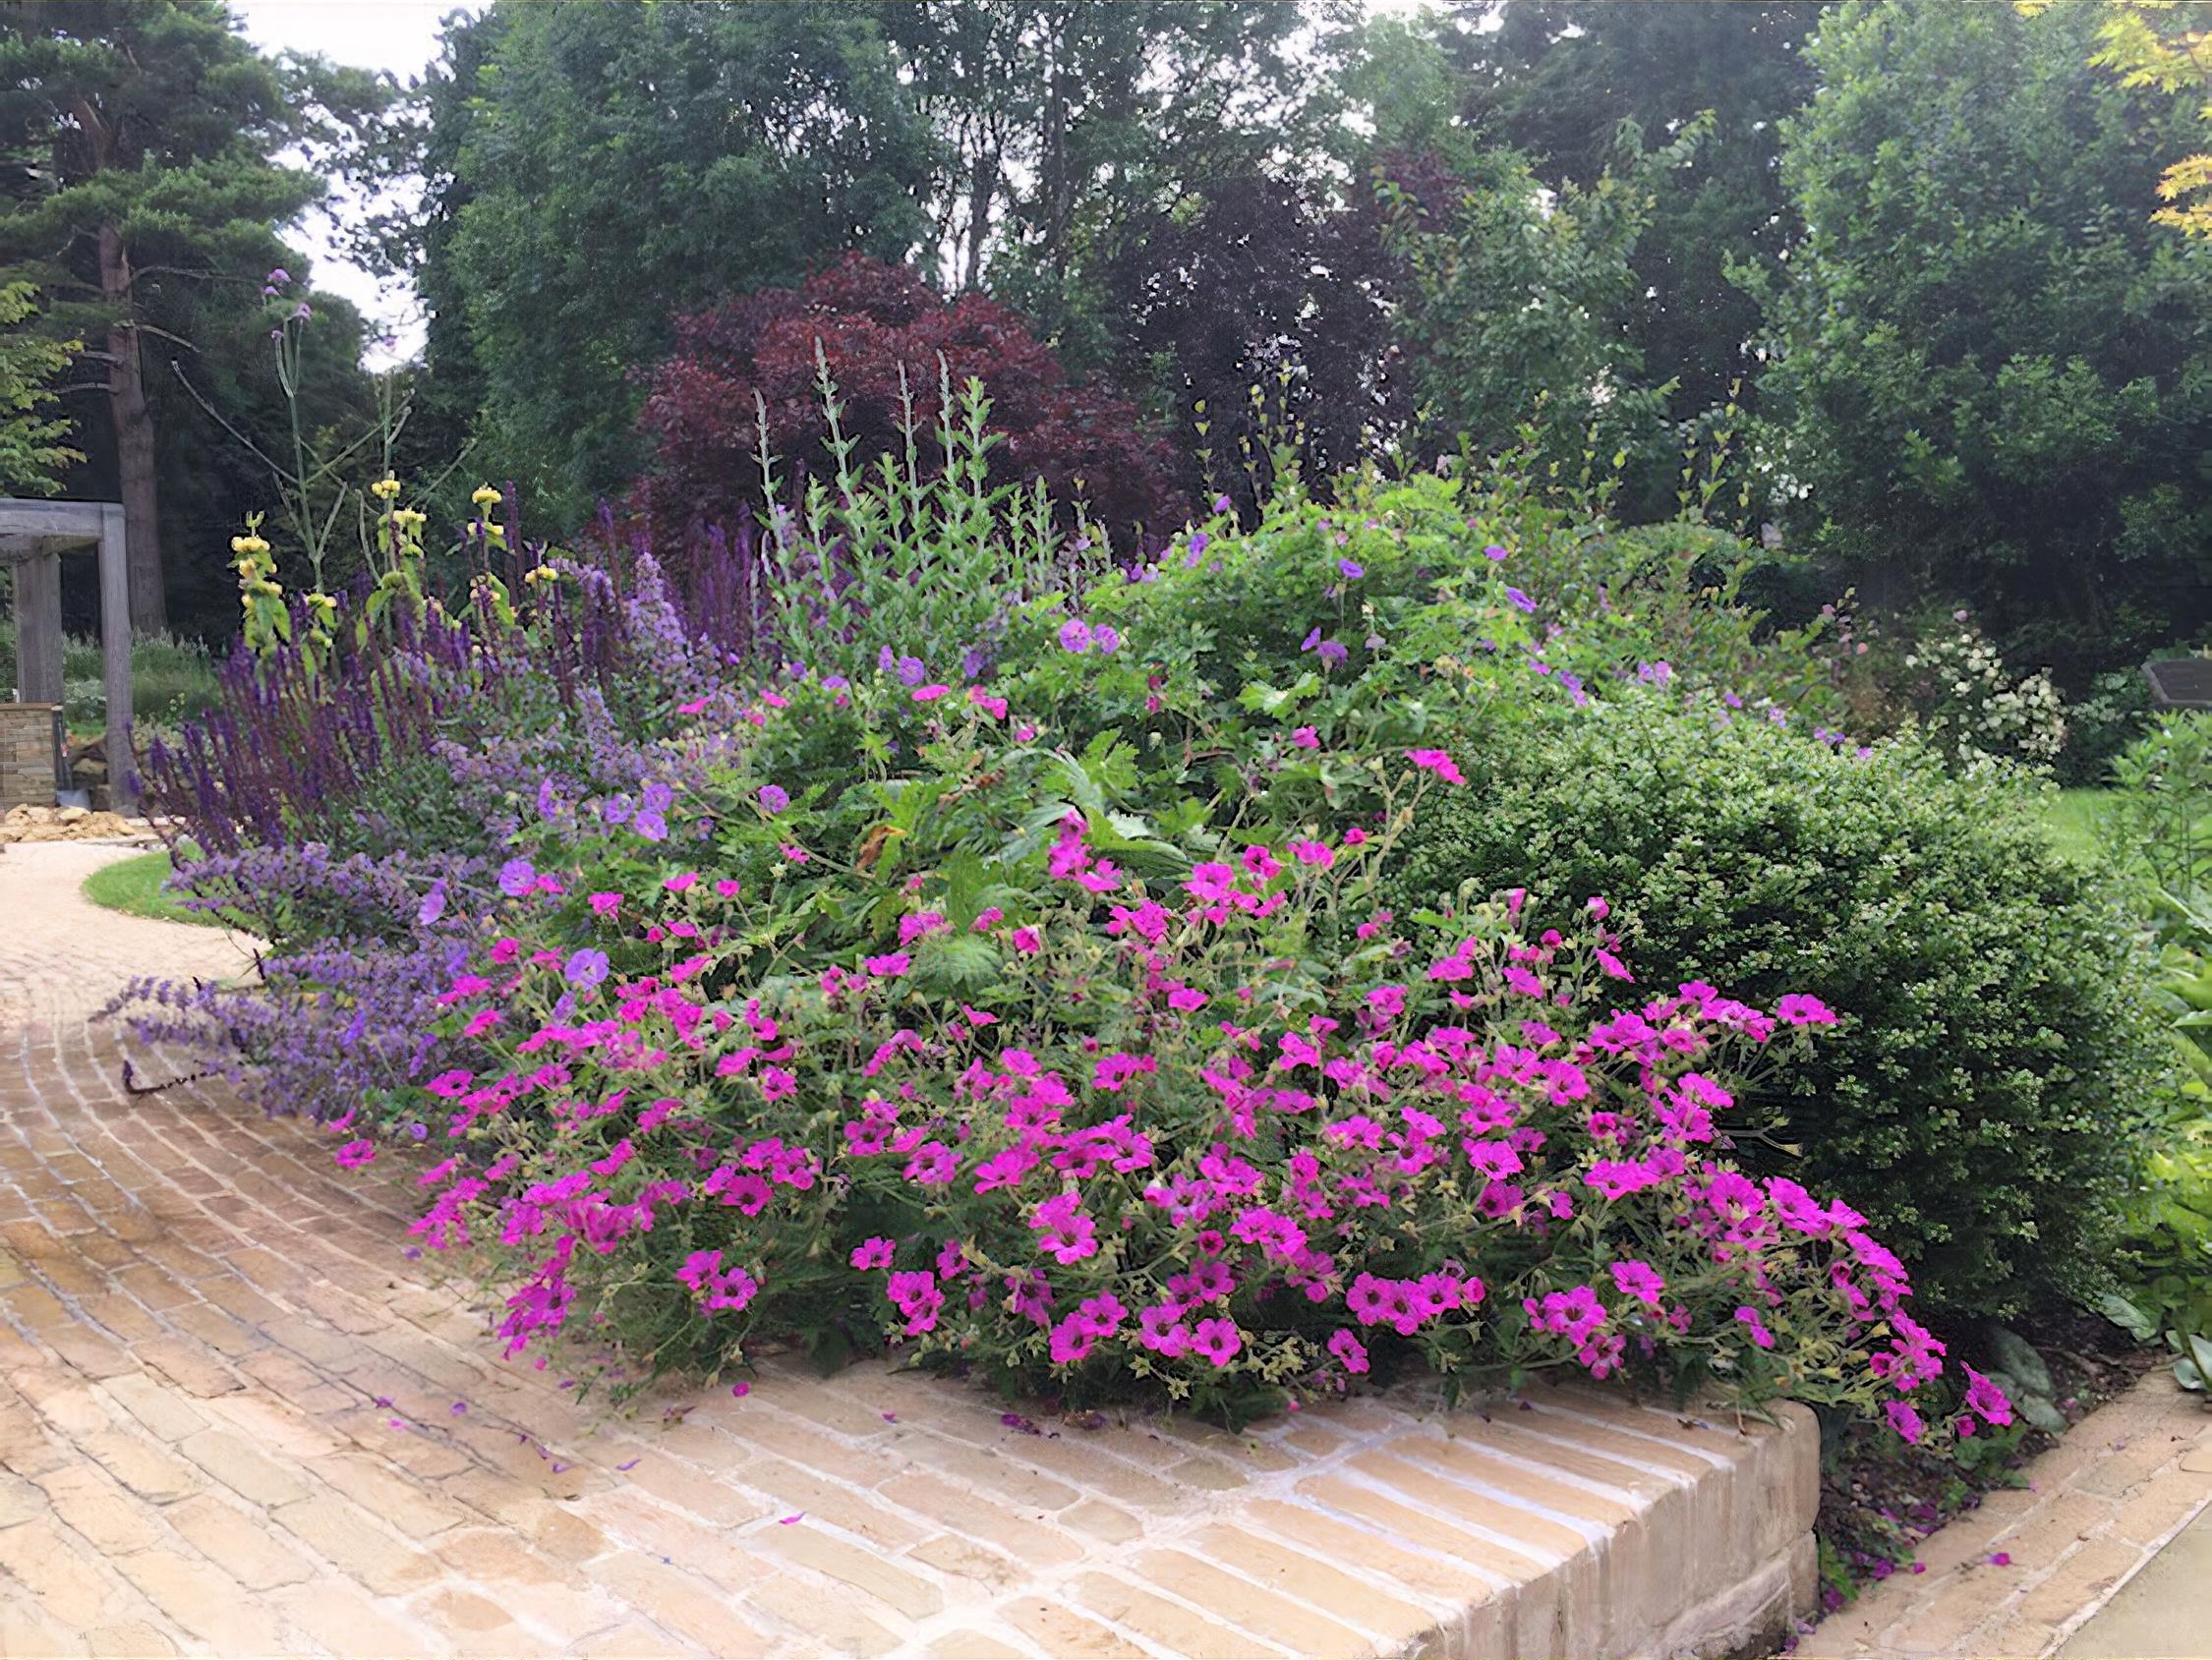 Large Country Garden Design in Surrey by garden designer Helen Elks-Smith MSG